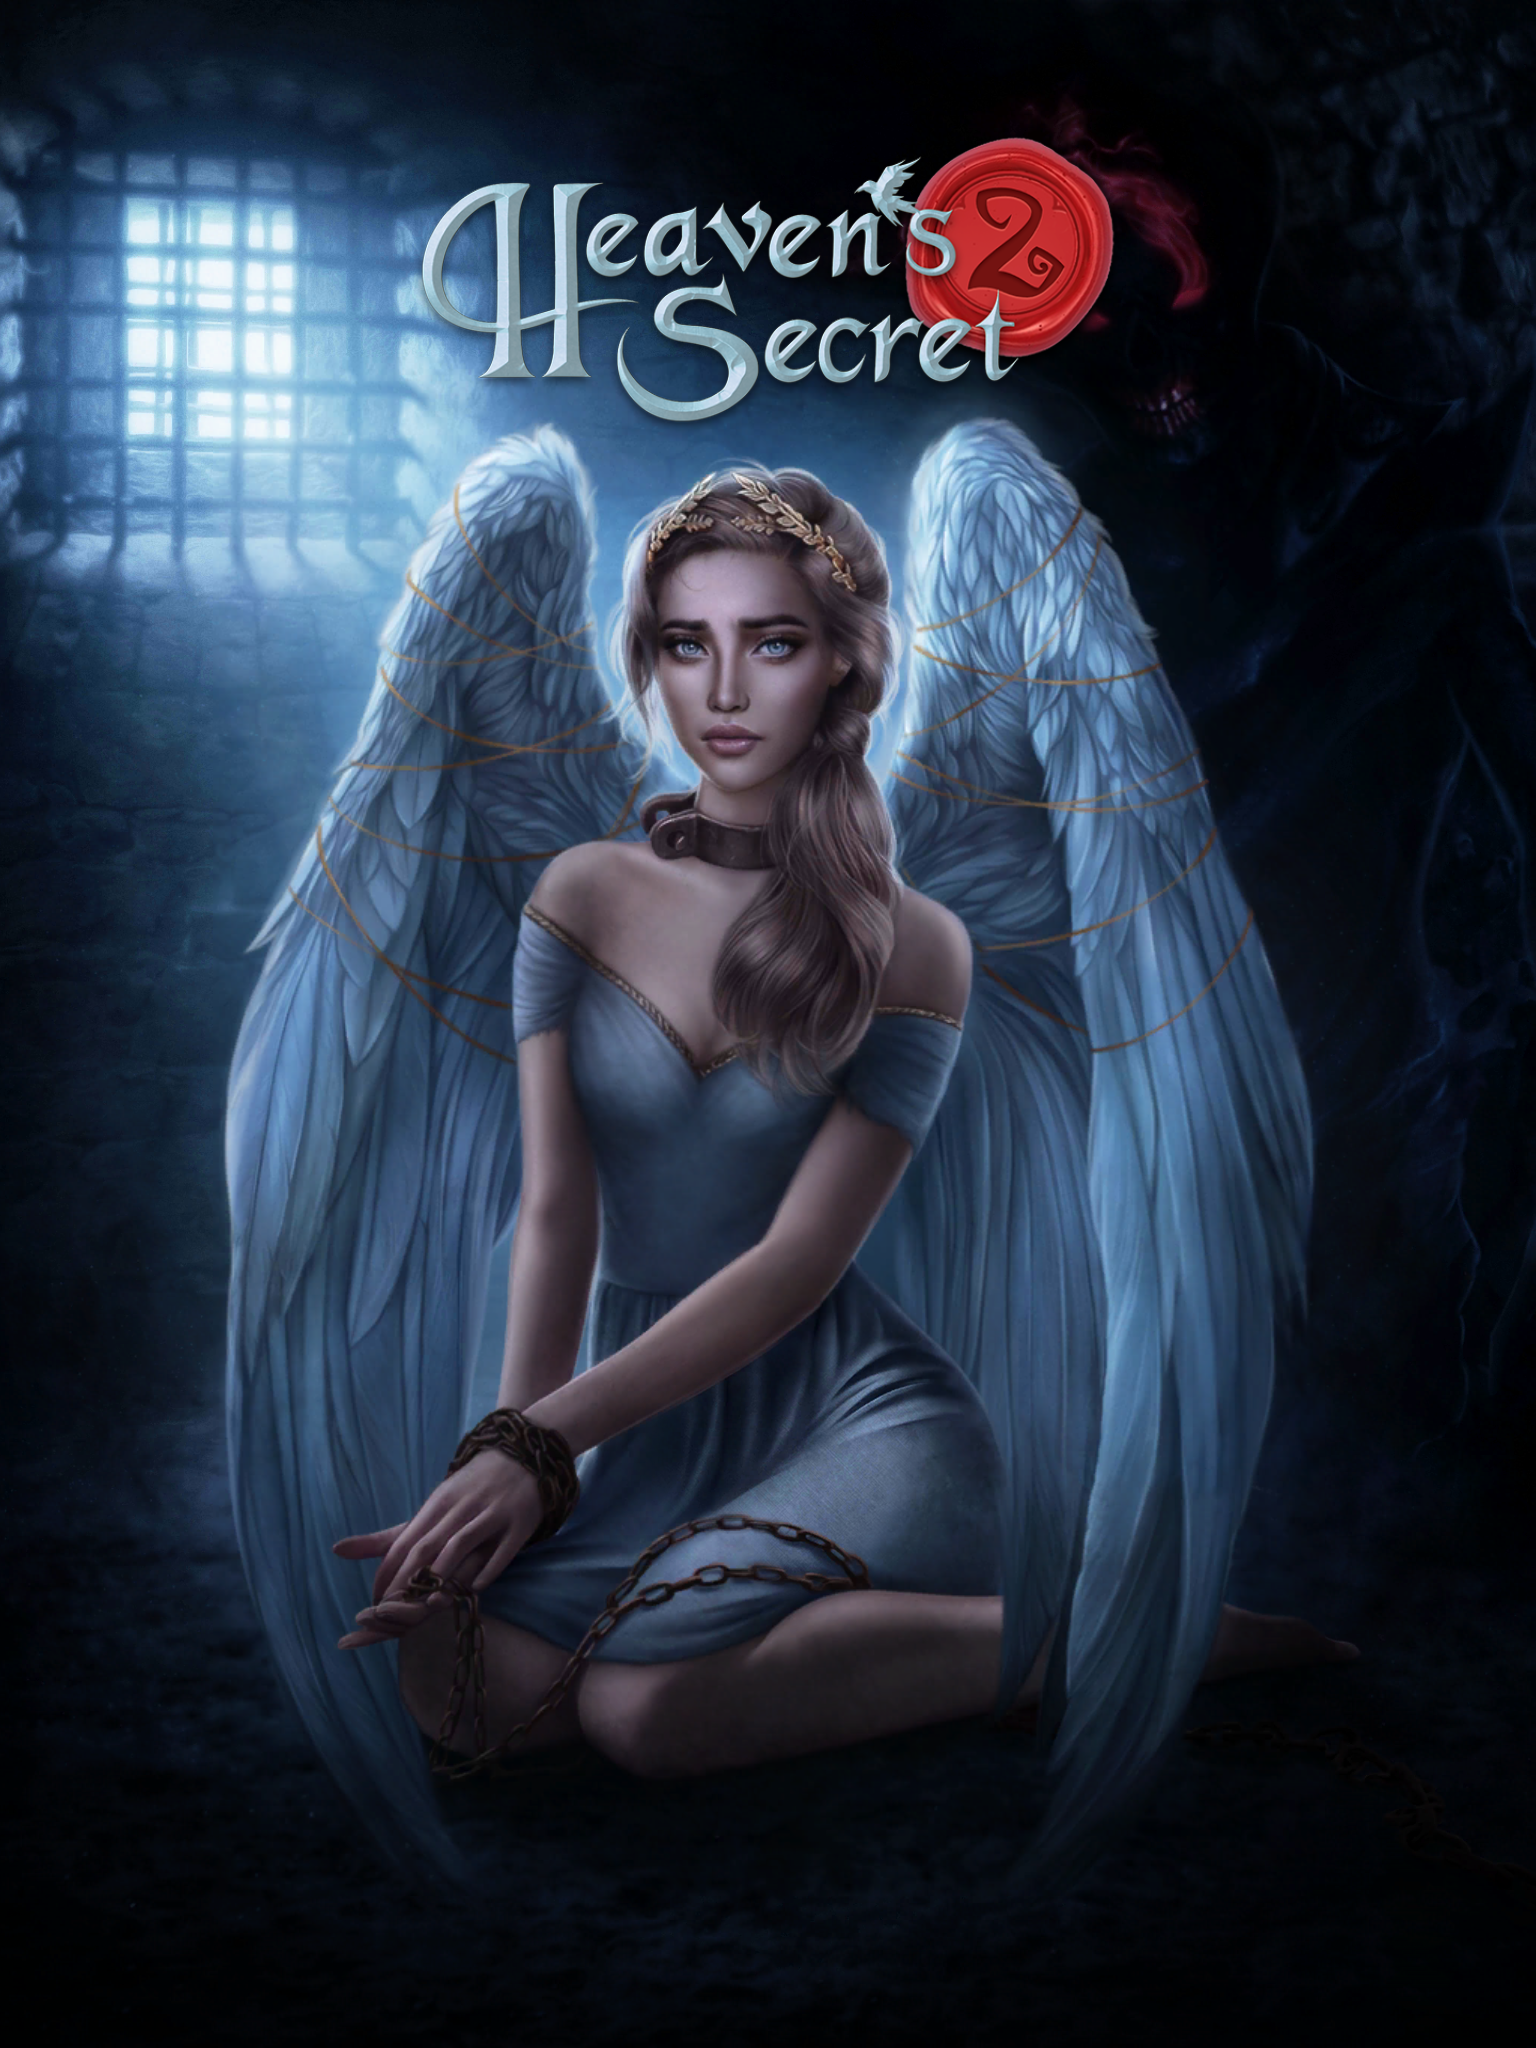 Women'secret - Women'secret updated their cover photo.